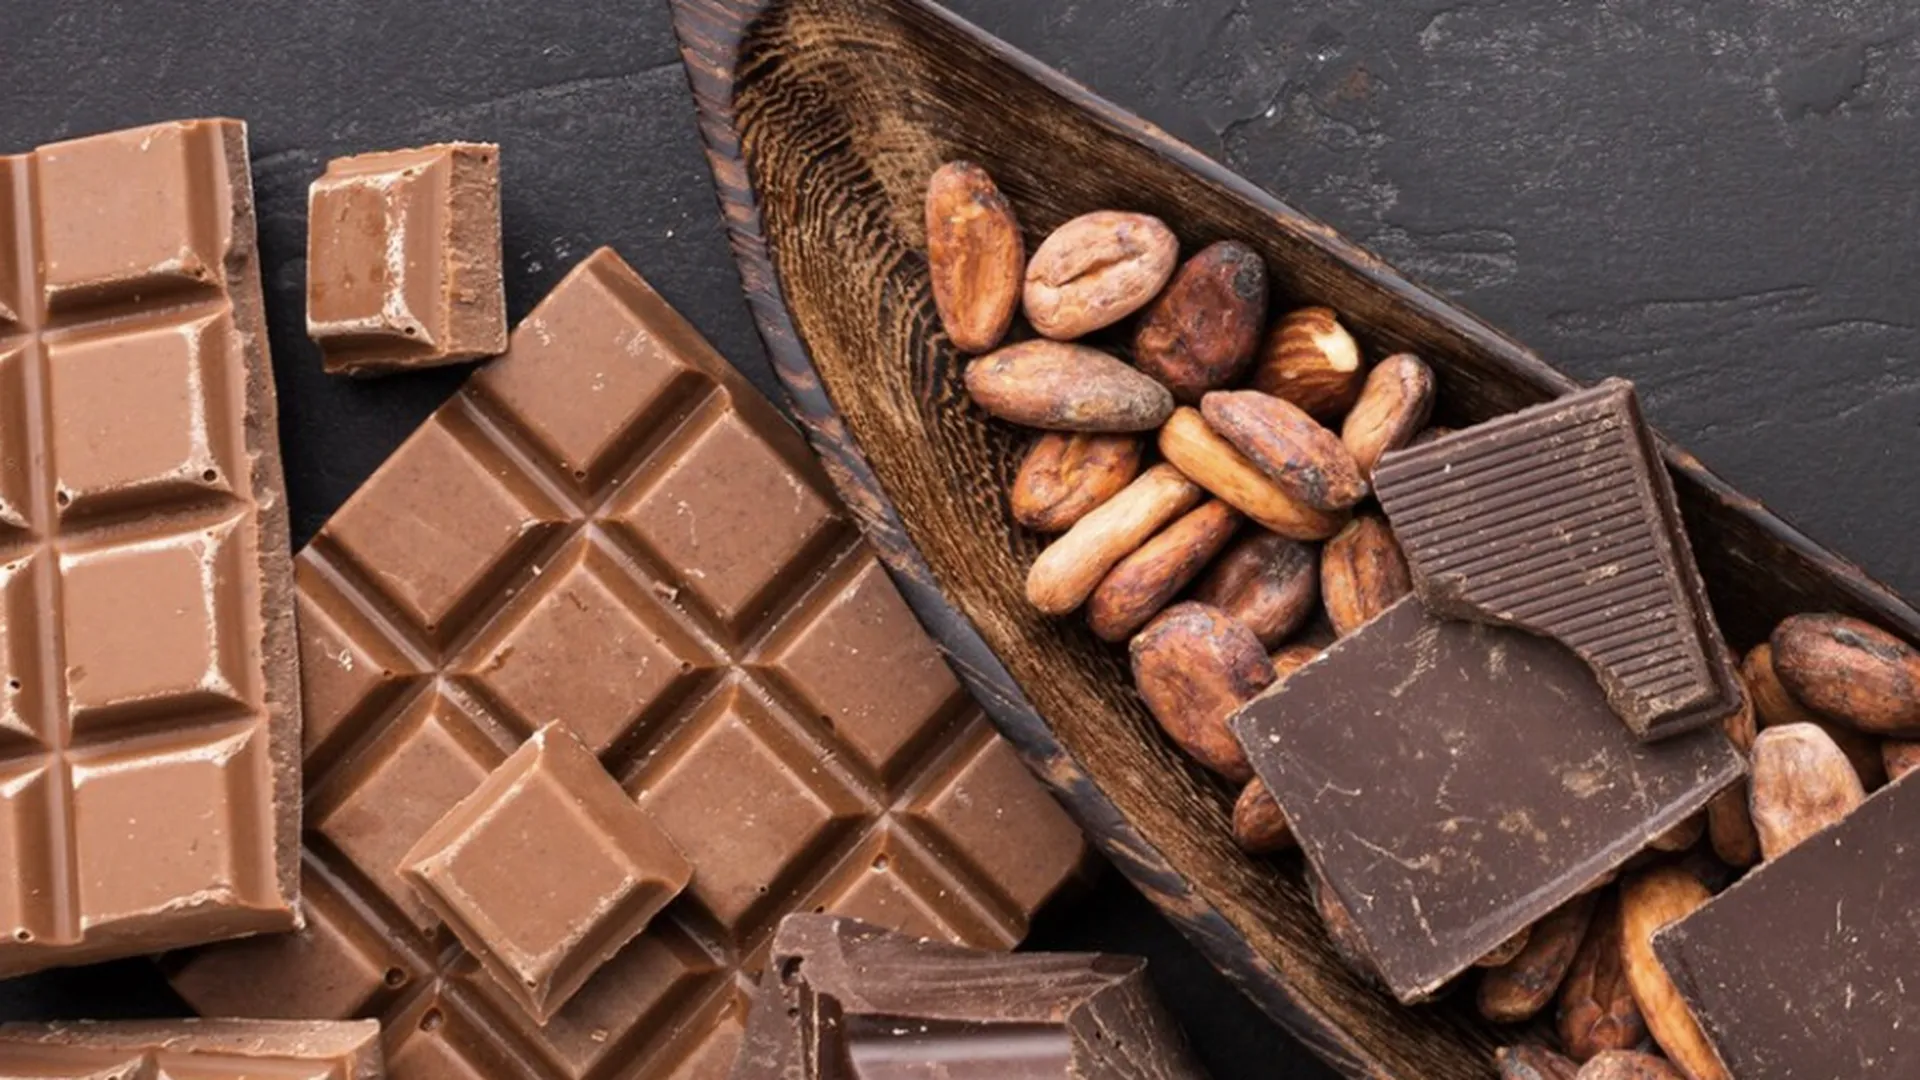 Врач рассказала, что шоколад может защитить от рака